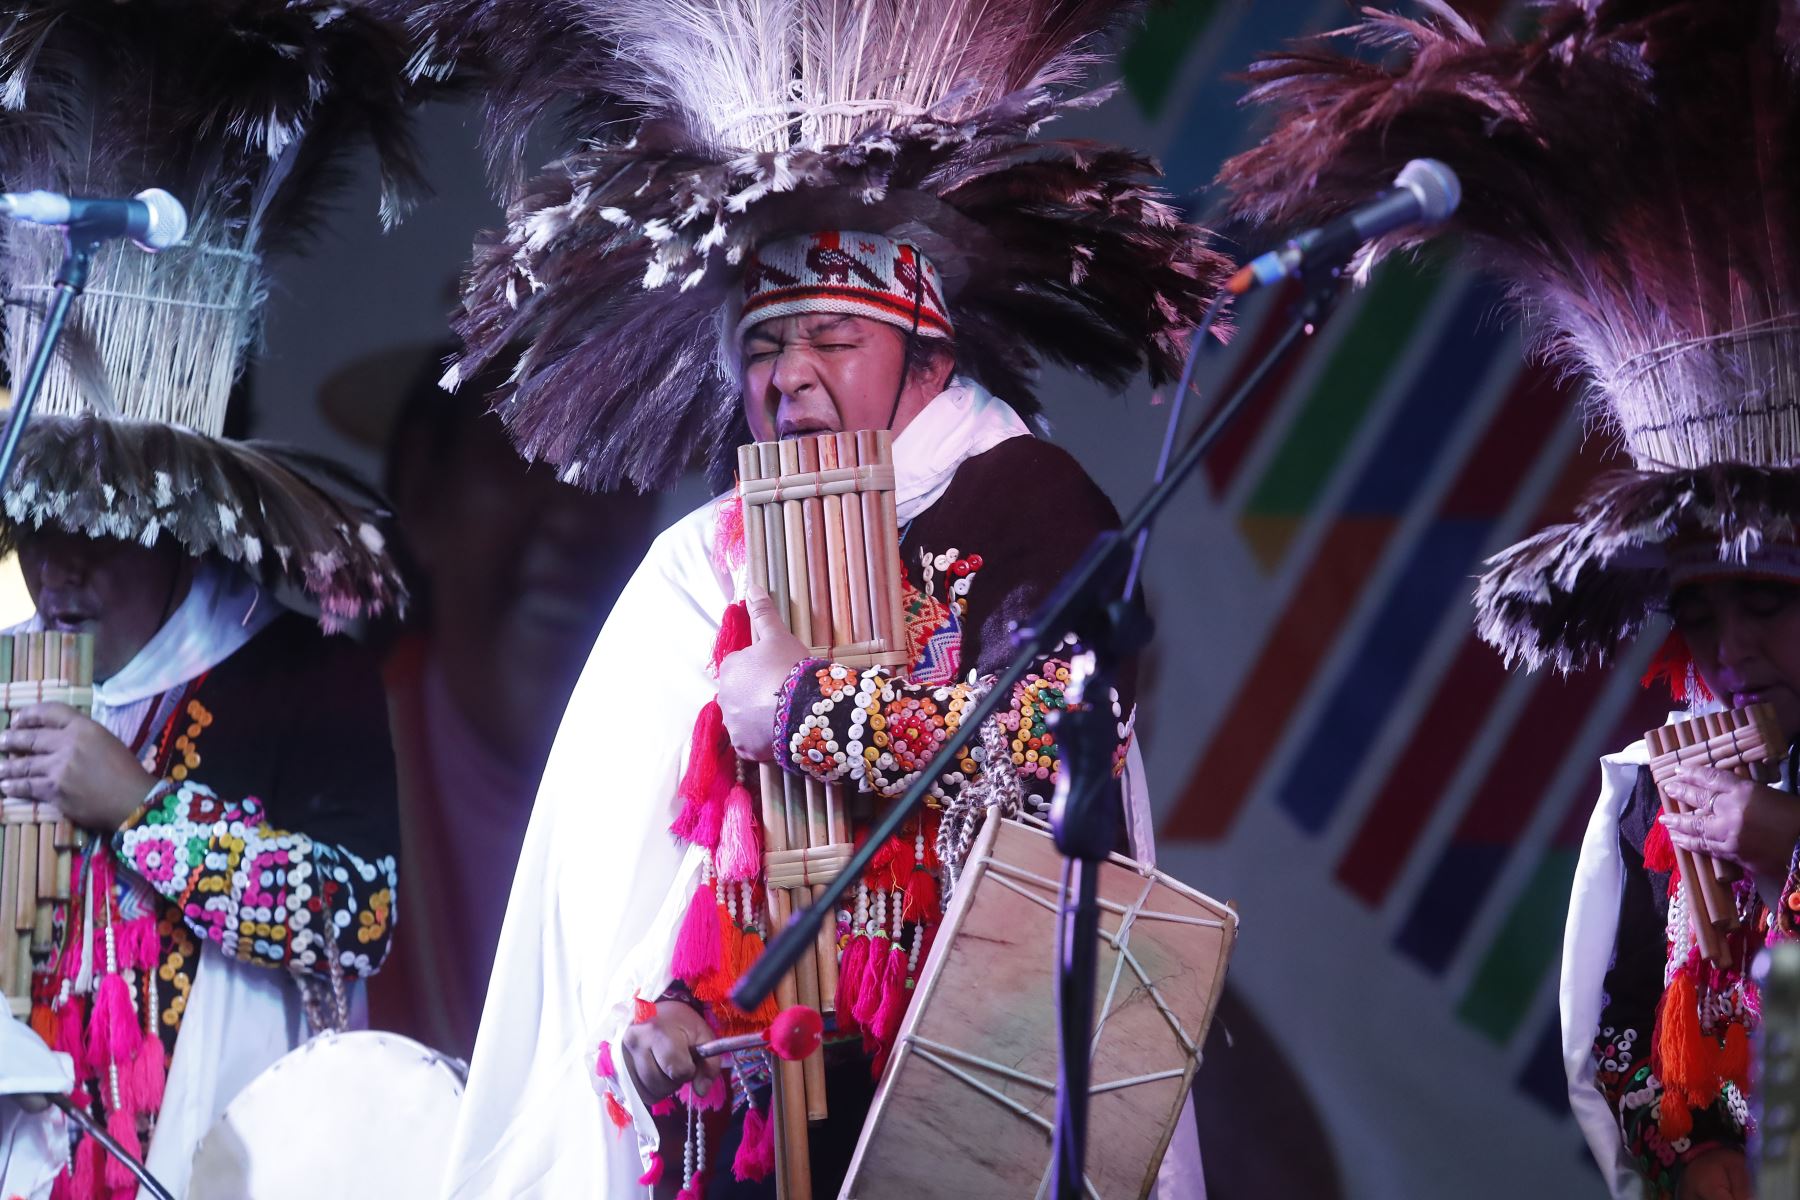 En el marco del Día Internacional de los Pueblos Indígenas, el Ministerio de Cultura organiza el Encuentro de voces: concierto en lenguas indígenas, realizado de manera gratuita, en la explanada de la sede central del ministerio en el distrito de San Borja. 
Foto: ANDINA / Renato Pajuelo